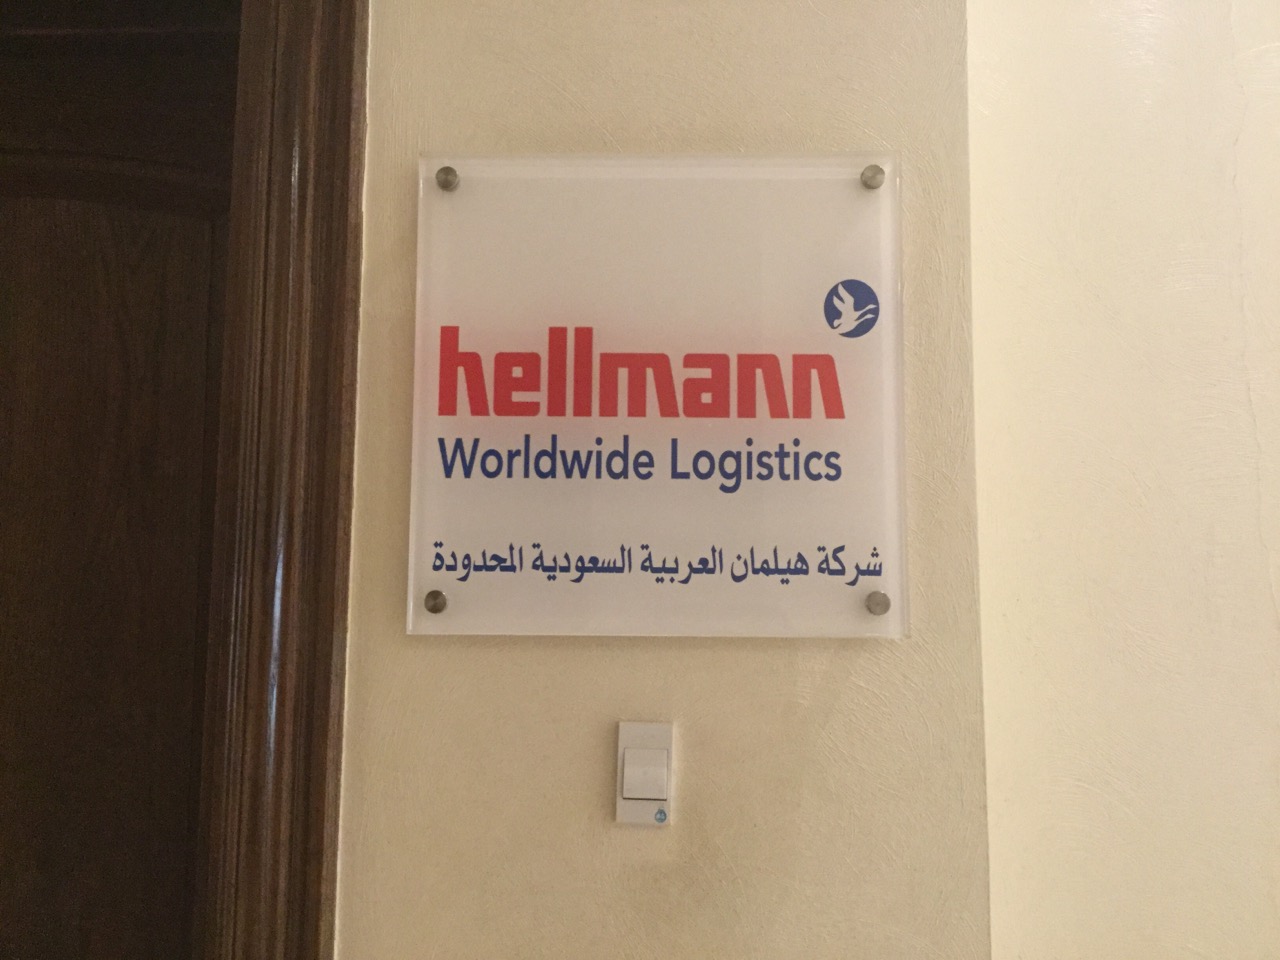 hellmann worldwide logistics tender manager salary